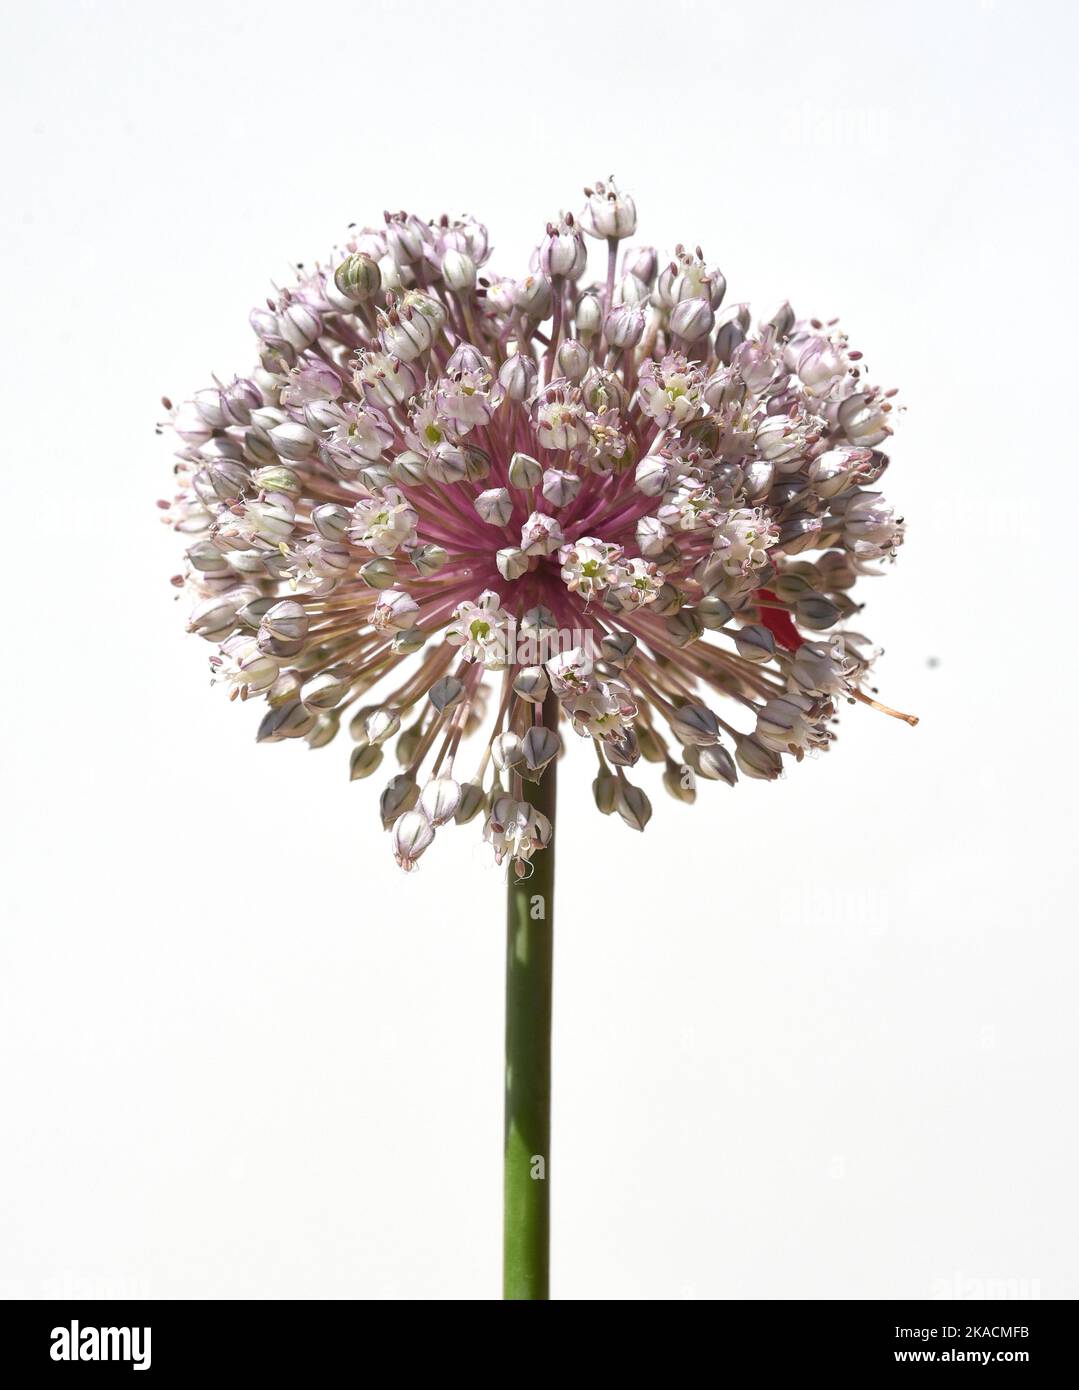 Porree, Allium, porrum, ist eine Heilpflanze und eine der wichtigsten Kuechenkraeuter. Lauch, Allium, porrum, ist eine Heilpflanze und eine der am meisten Stockfoto